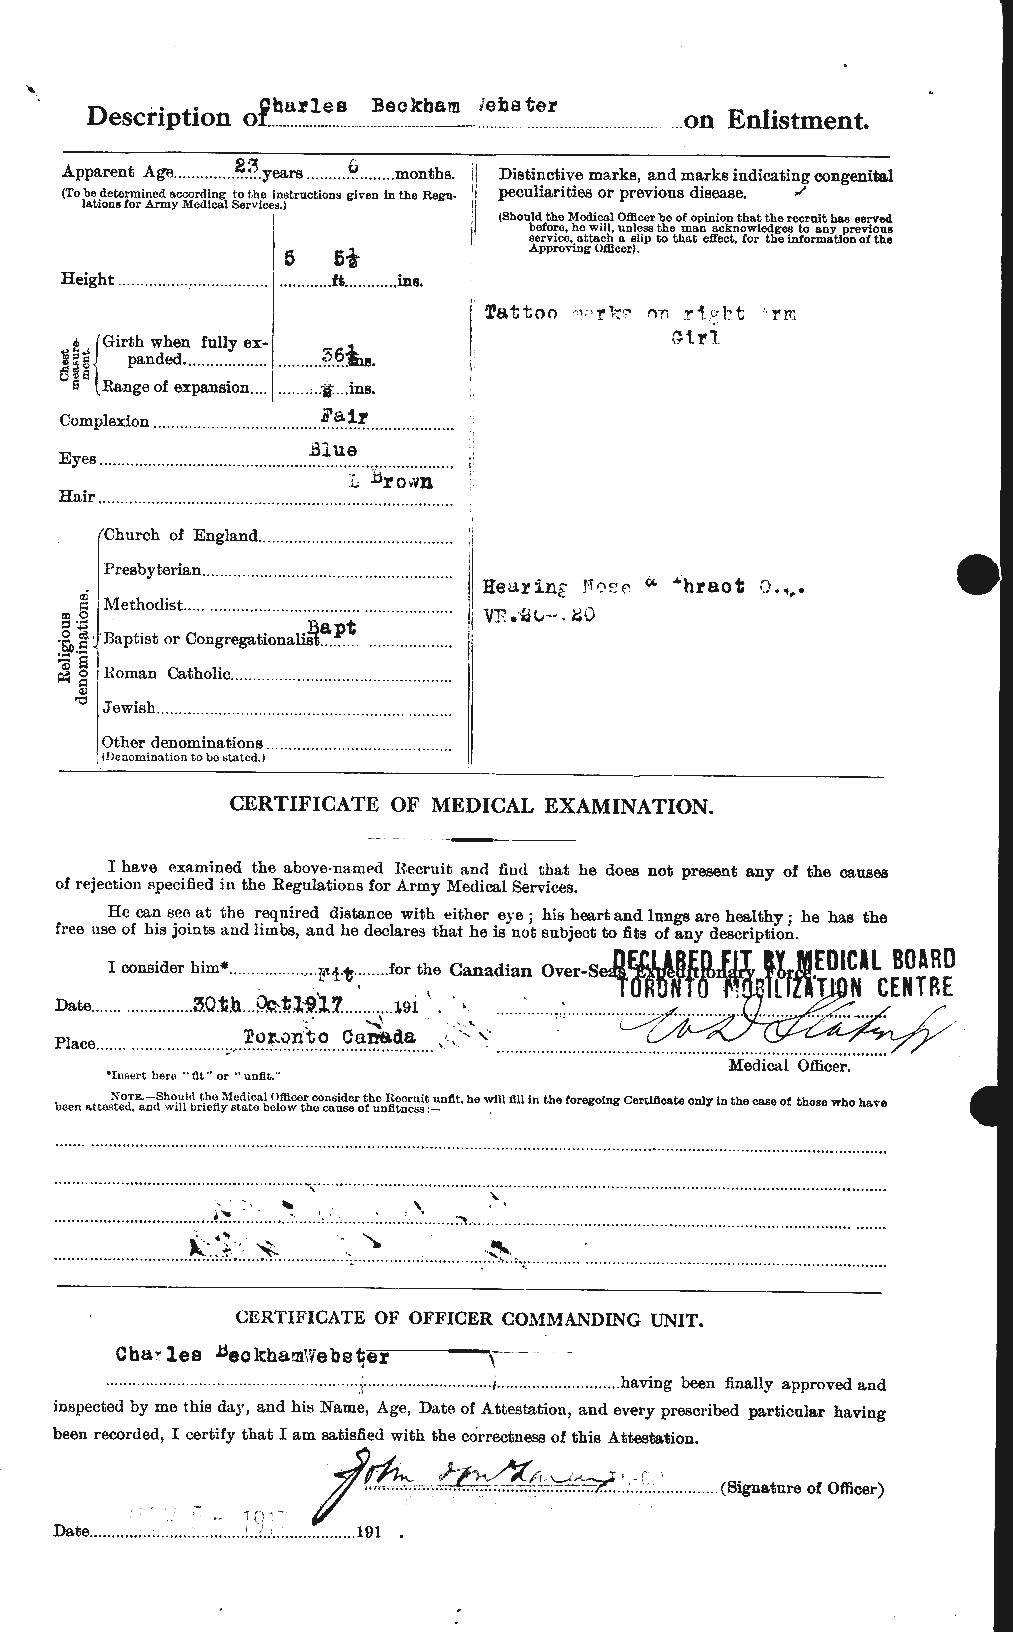 Dossiers du Personnel de la Première Guerre mondiale - CEC 670292b